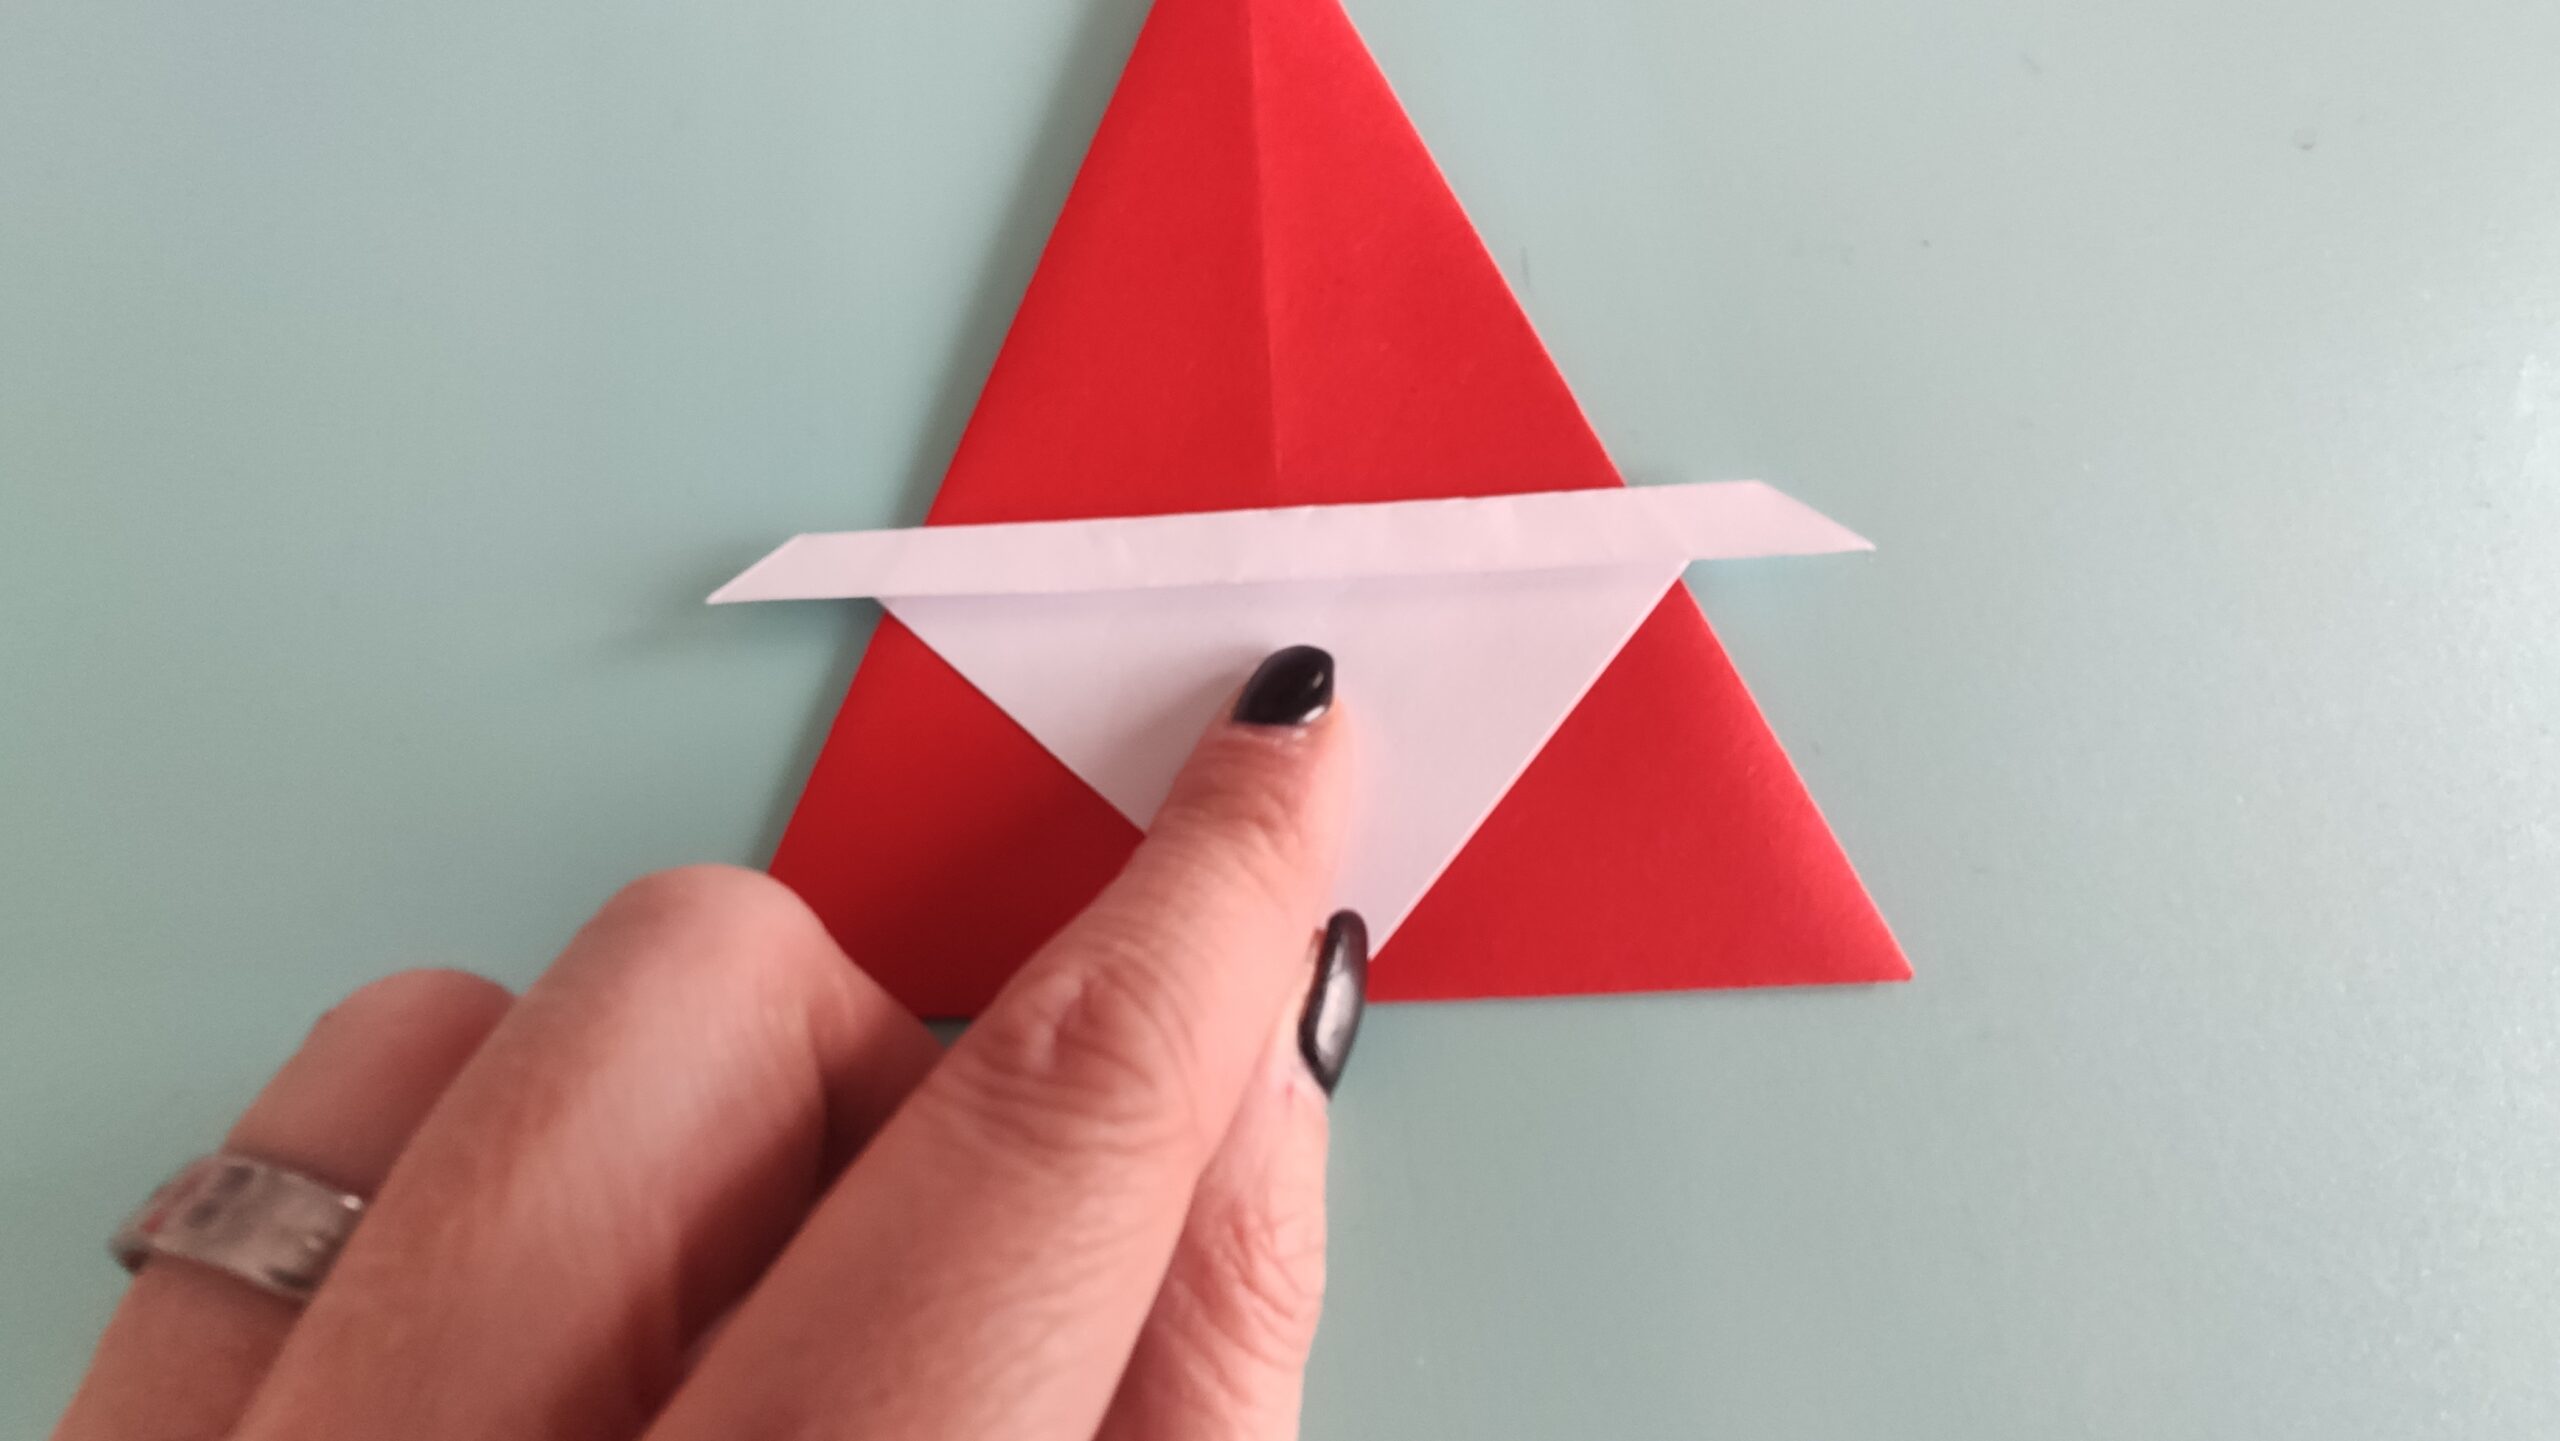 Bild zum Schritt 9 für das Bastel- und DIY-Abenteuer für Kinder: 'Jetzt legt ihr das weiße Dreieck auf das rote Dreieck....'